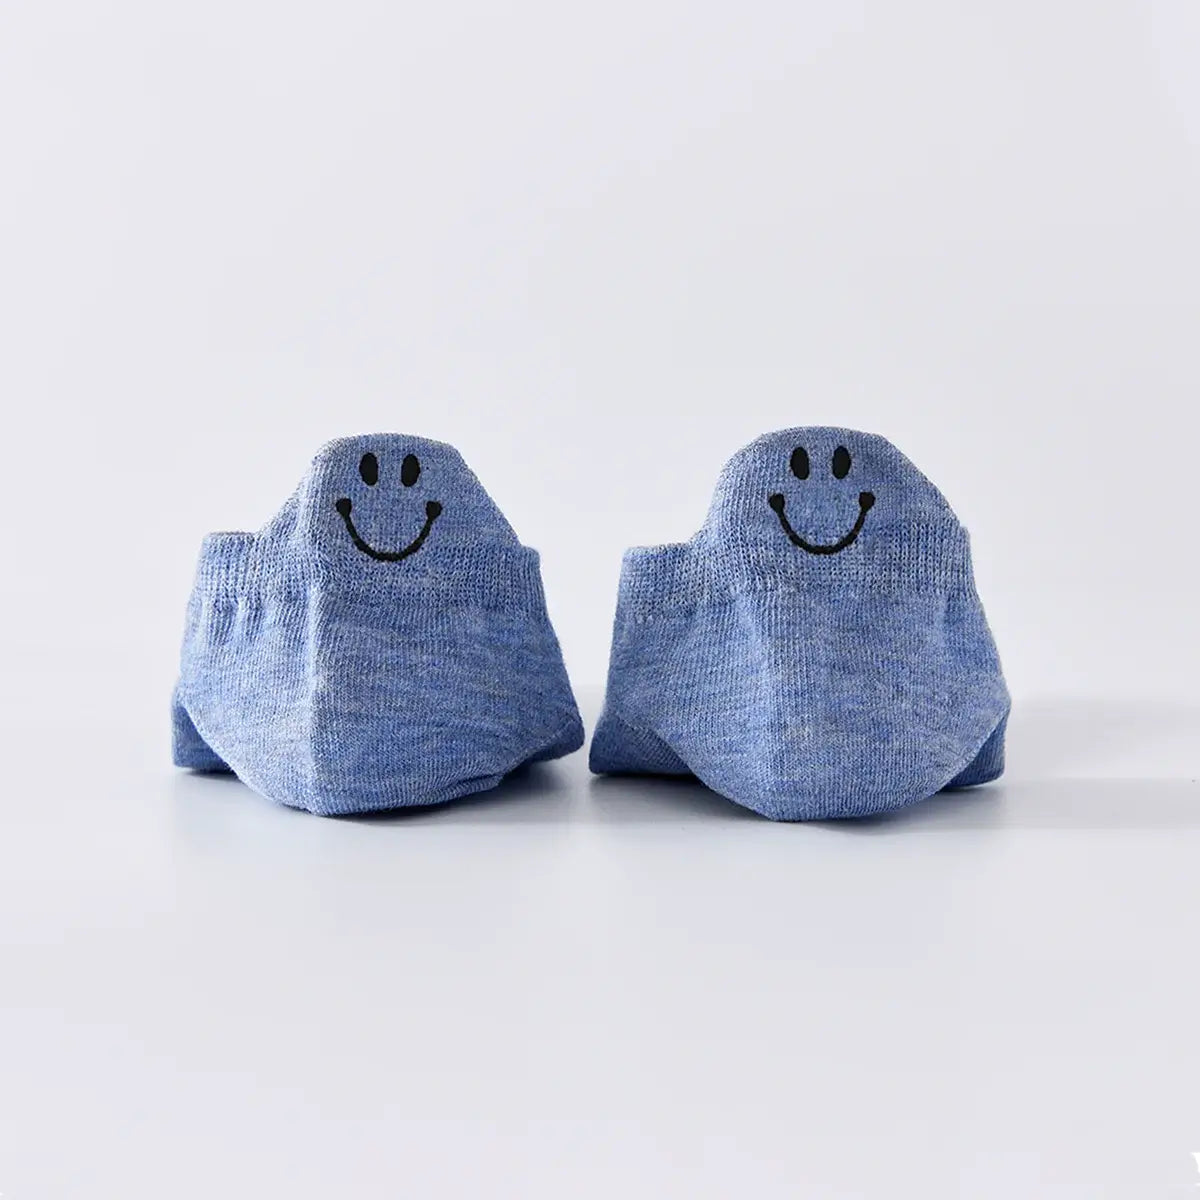 Chaussettes bleu en coton à languette Happy à motif smiley pour femme | Chaussettes douces et respirantes | Un cadeau parfait pour les femmes de tous âges | Disponibles à un prix abordable.